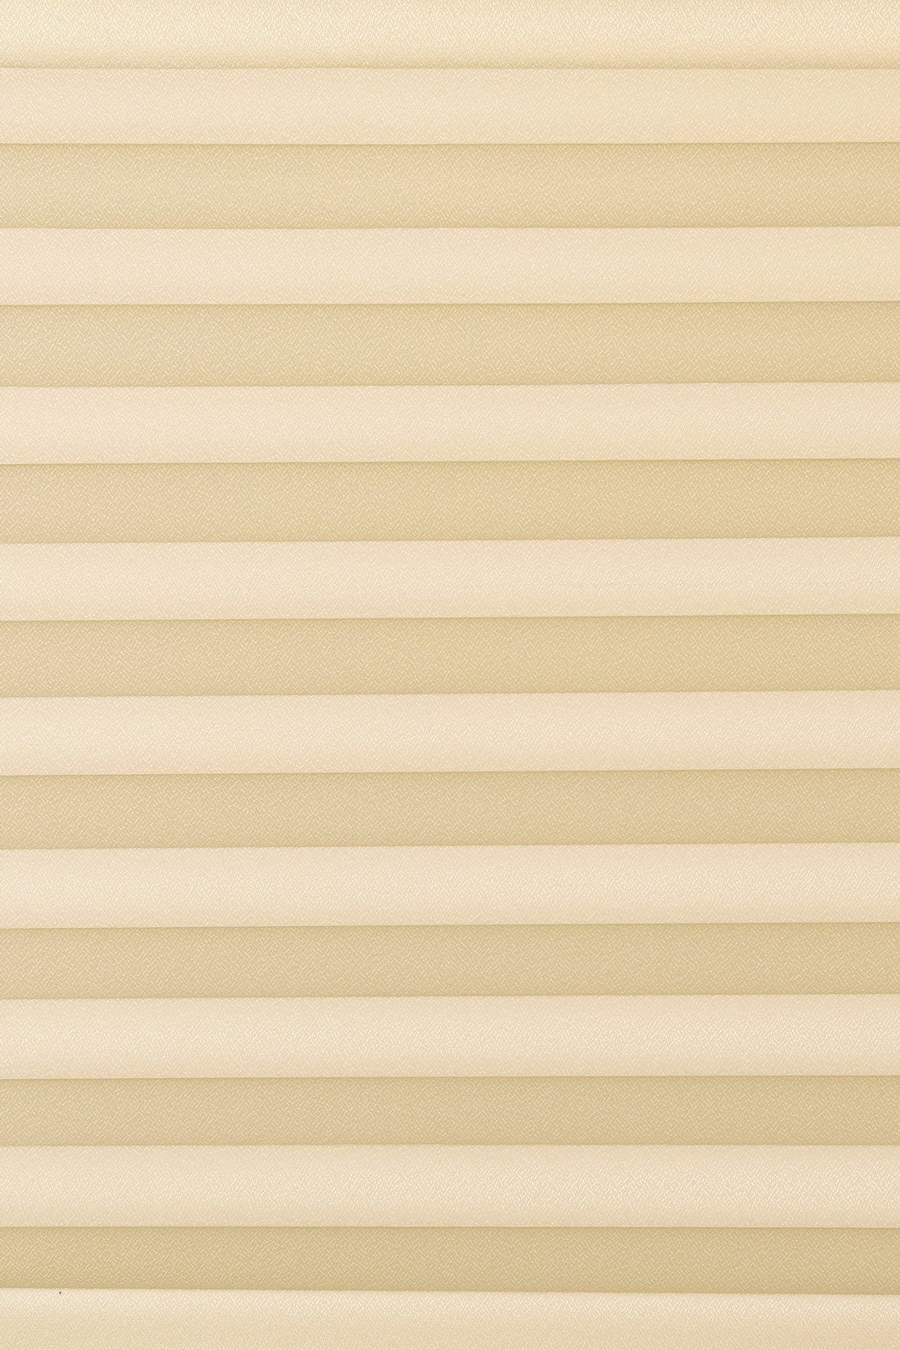 Ткань MIRROR cream-white 1206 для штор плиссе